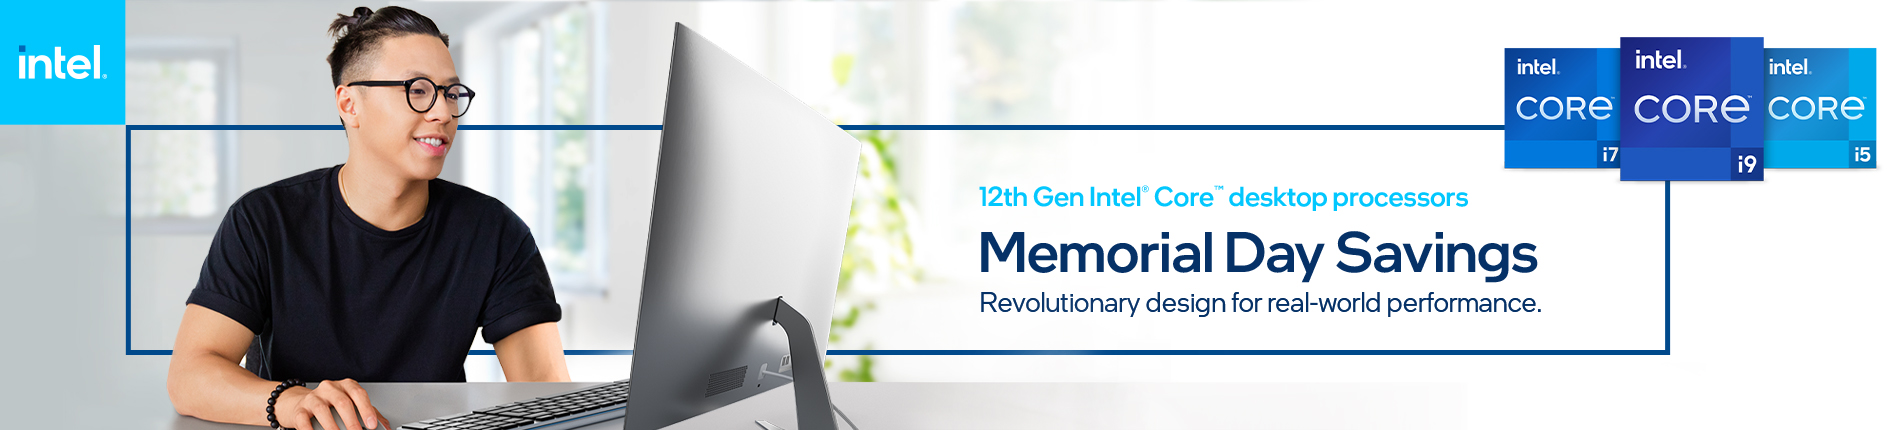 Intel 12thgen Consumer Launch 01.03.banner Memorial